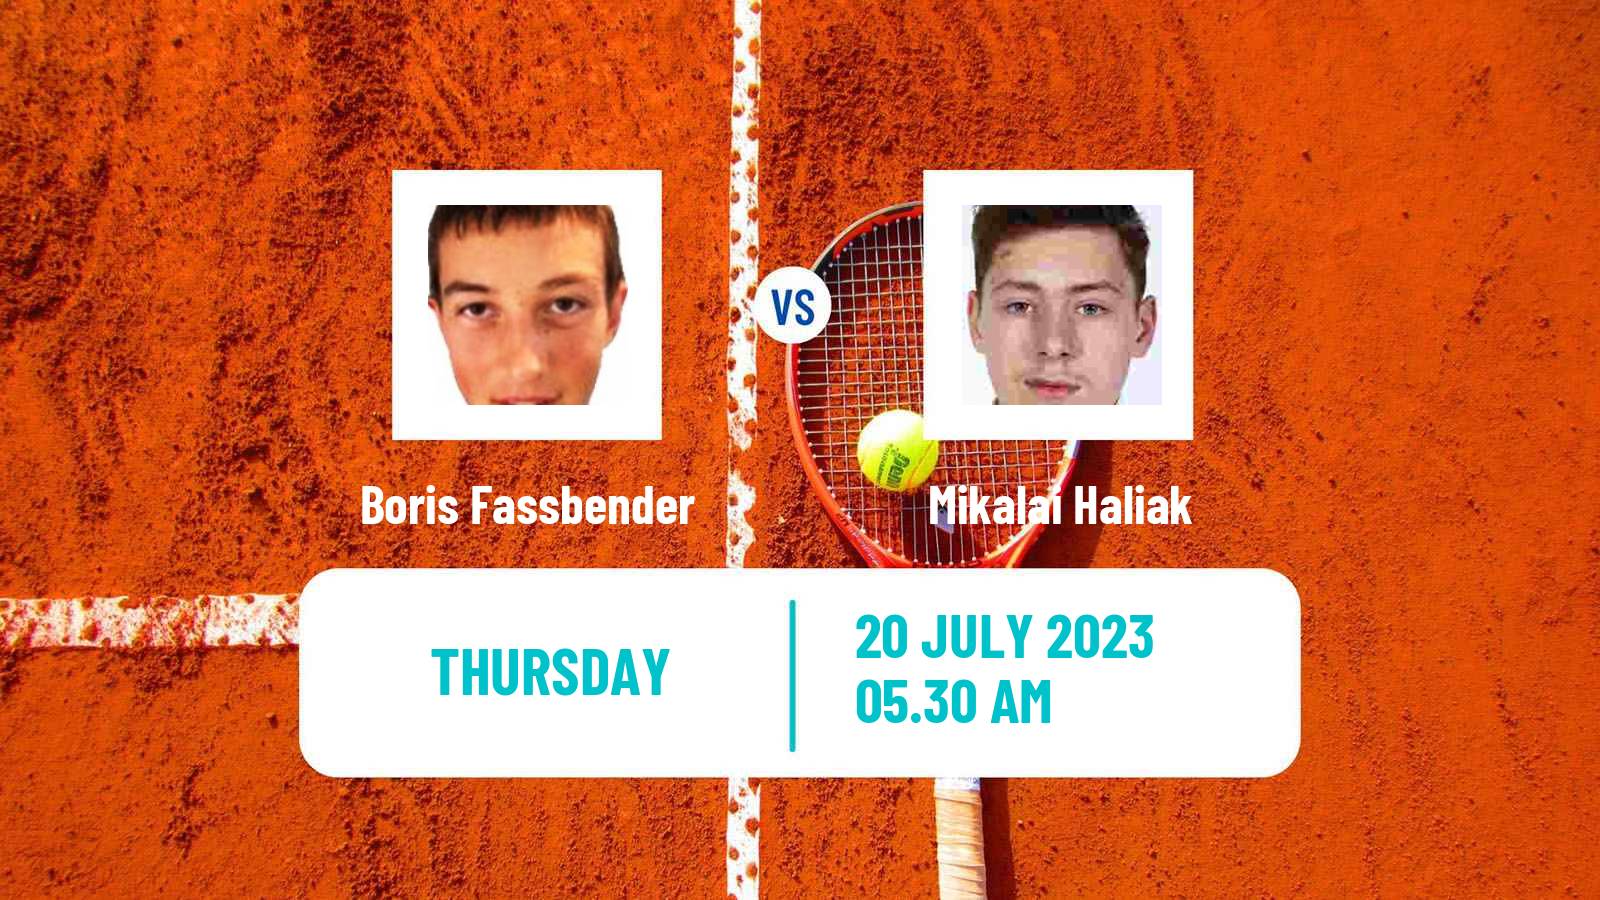 Tennis ITF M25 Esch Alzette 2 Men Boris Fassbender - Mikalai Haliak